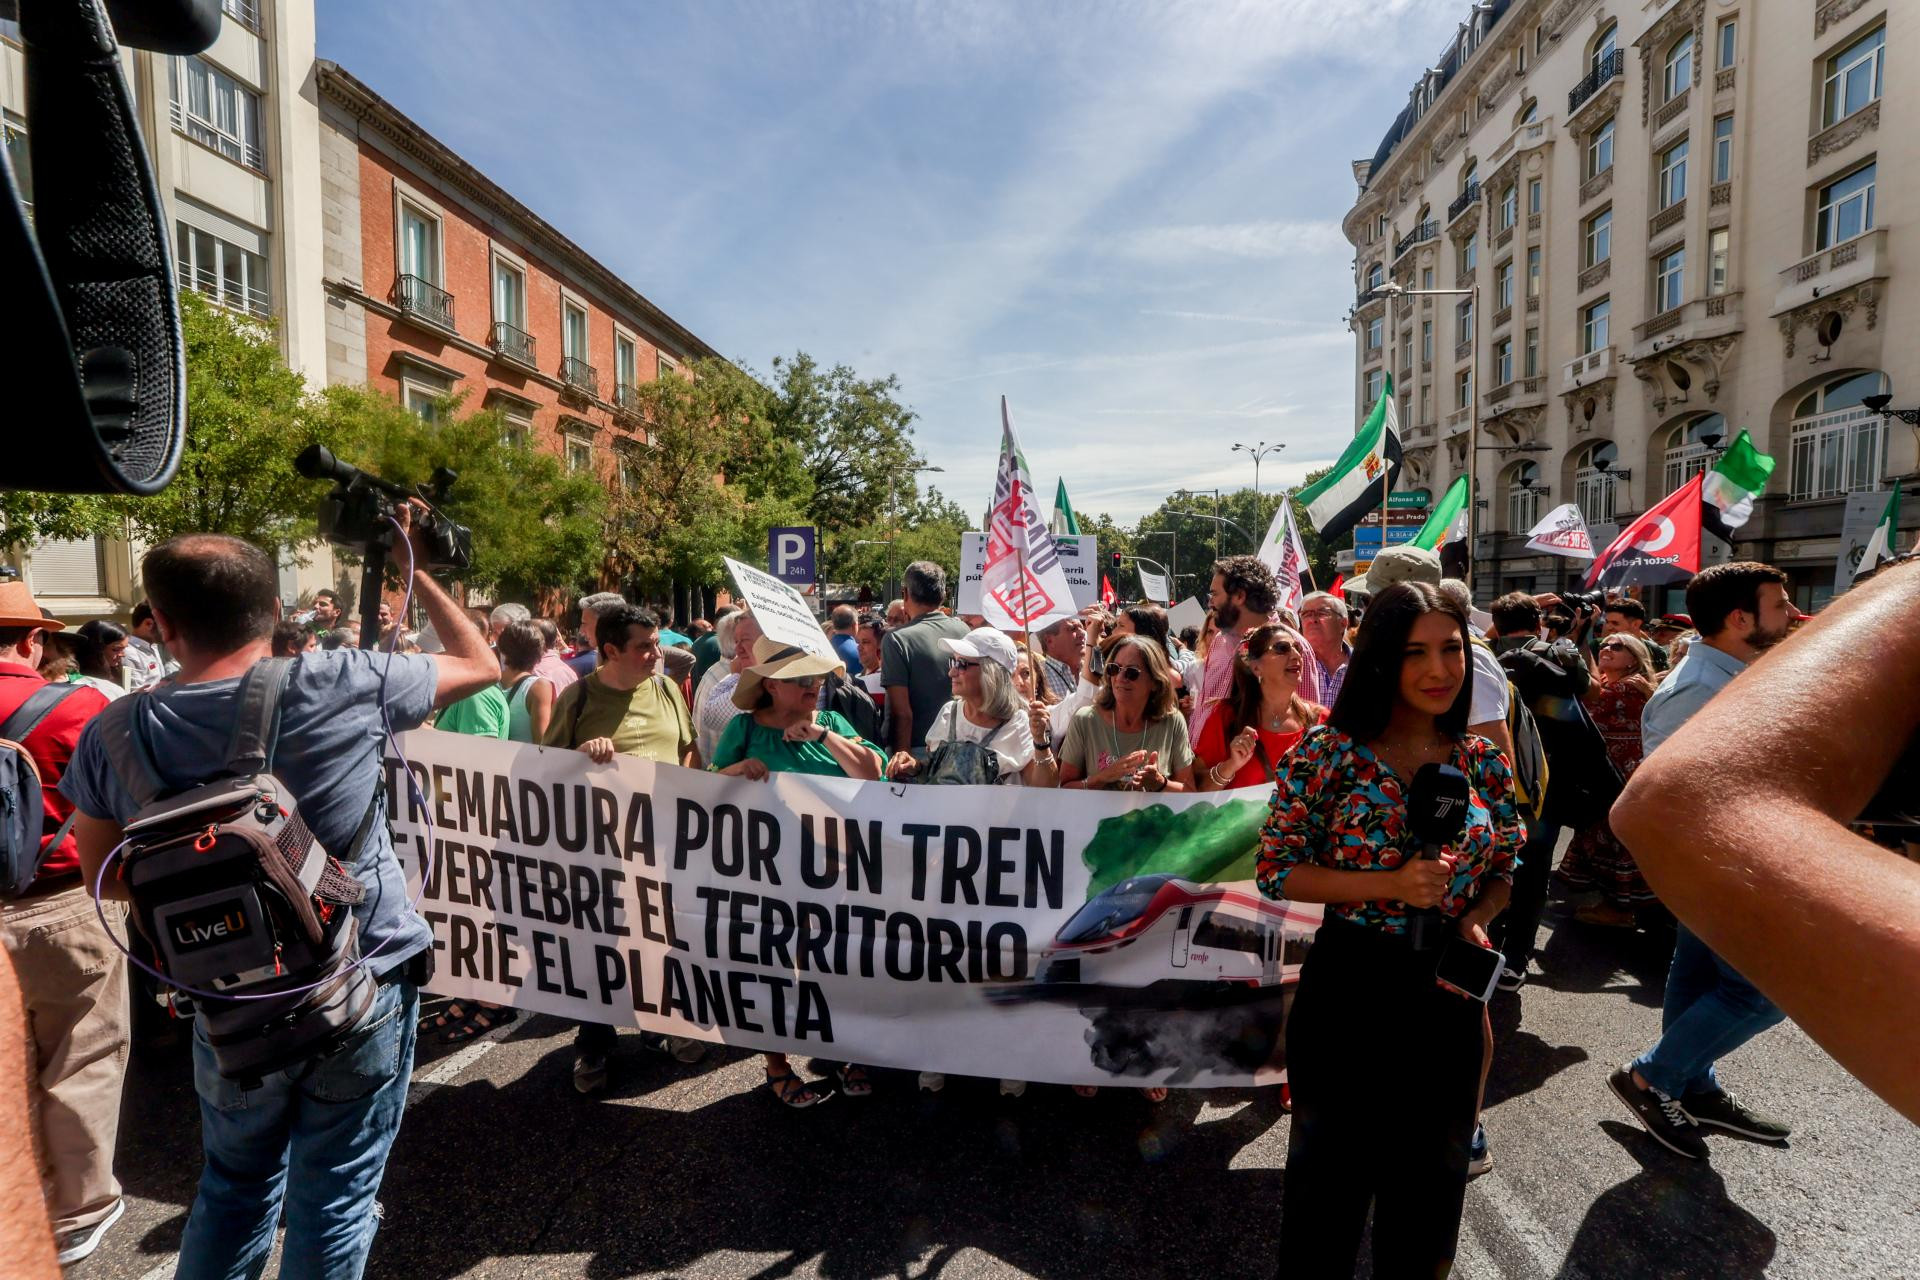 Moradores da Extremadura exigem um ‘comboio digno’ às portas do Congresso e mostram-se ‘fartos’ com promessas não cumpridas